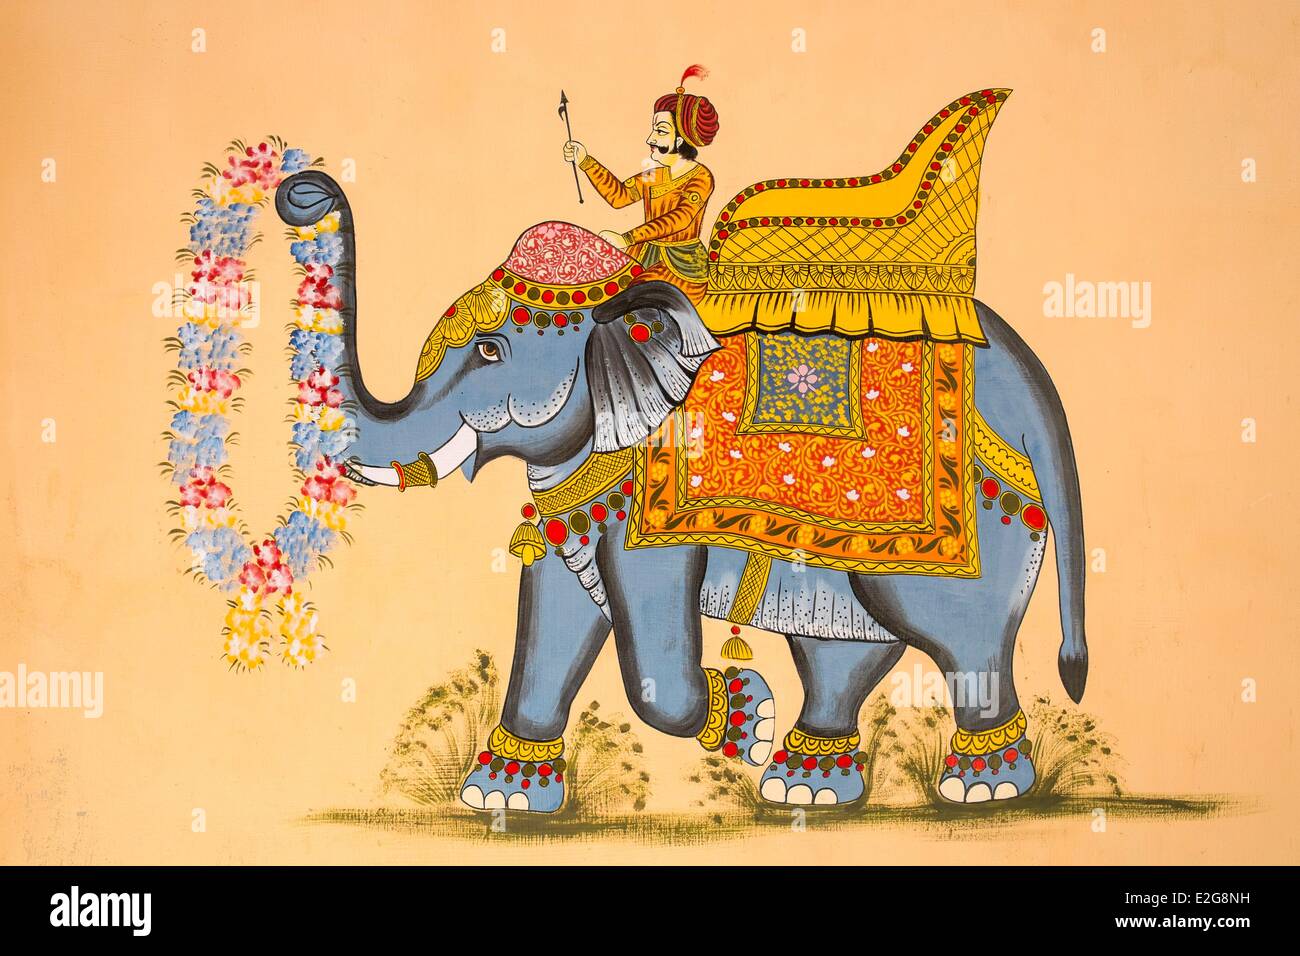 Indien Rajasthan State Jodhpur das alte Stadt-Wandbild Stockfoto